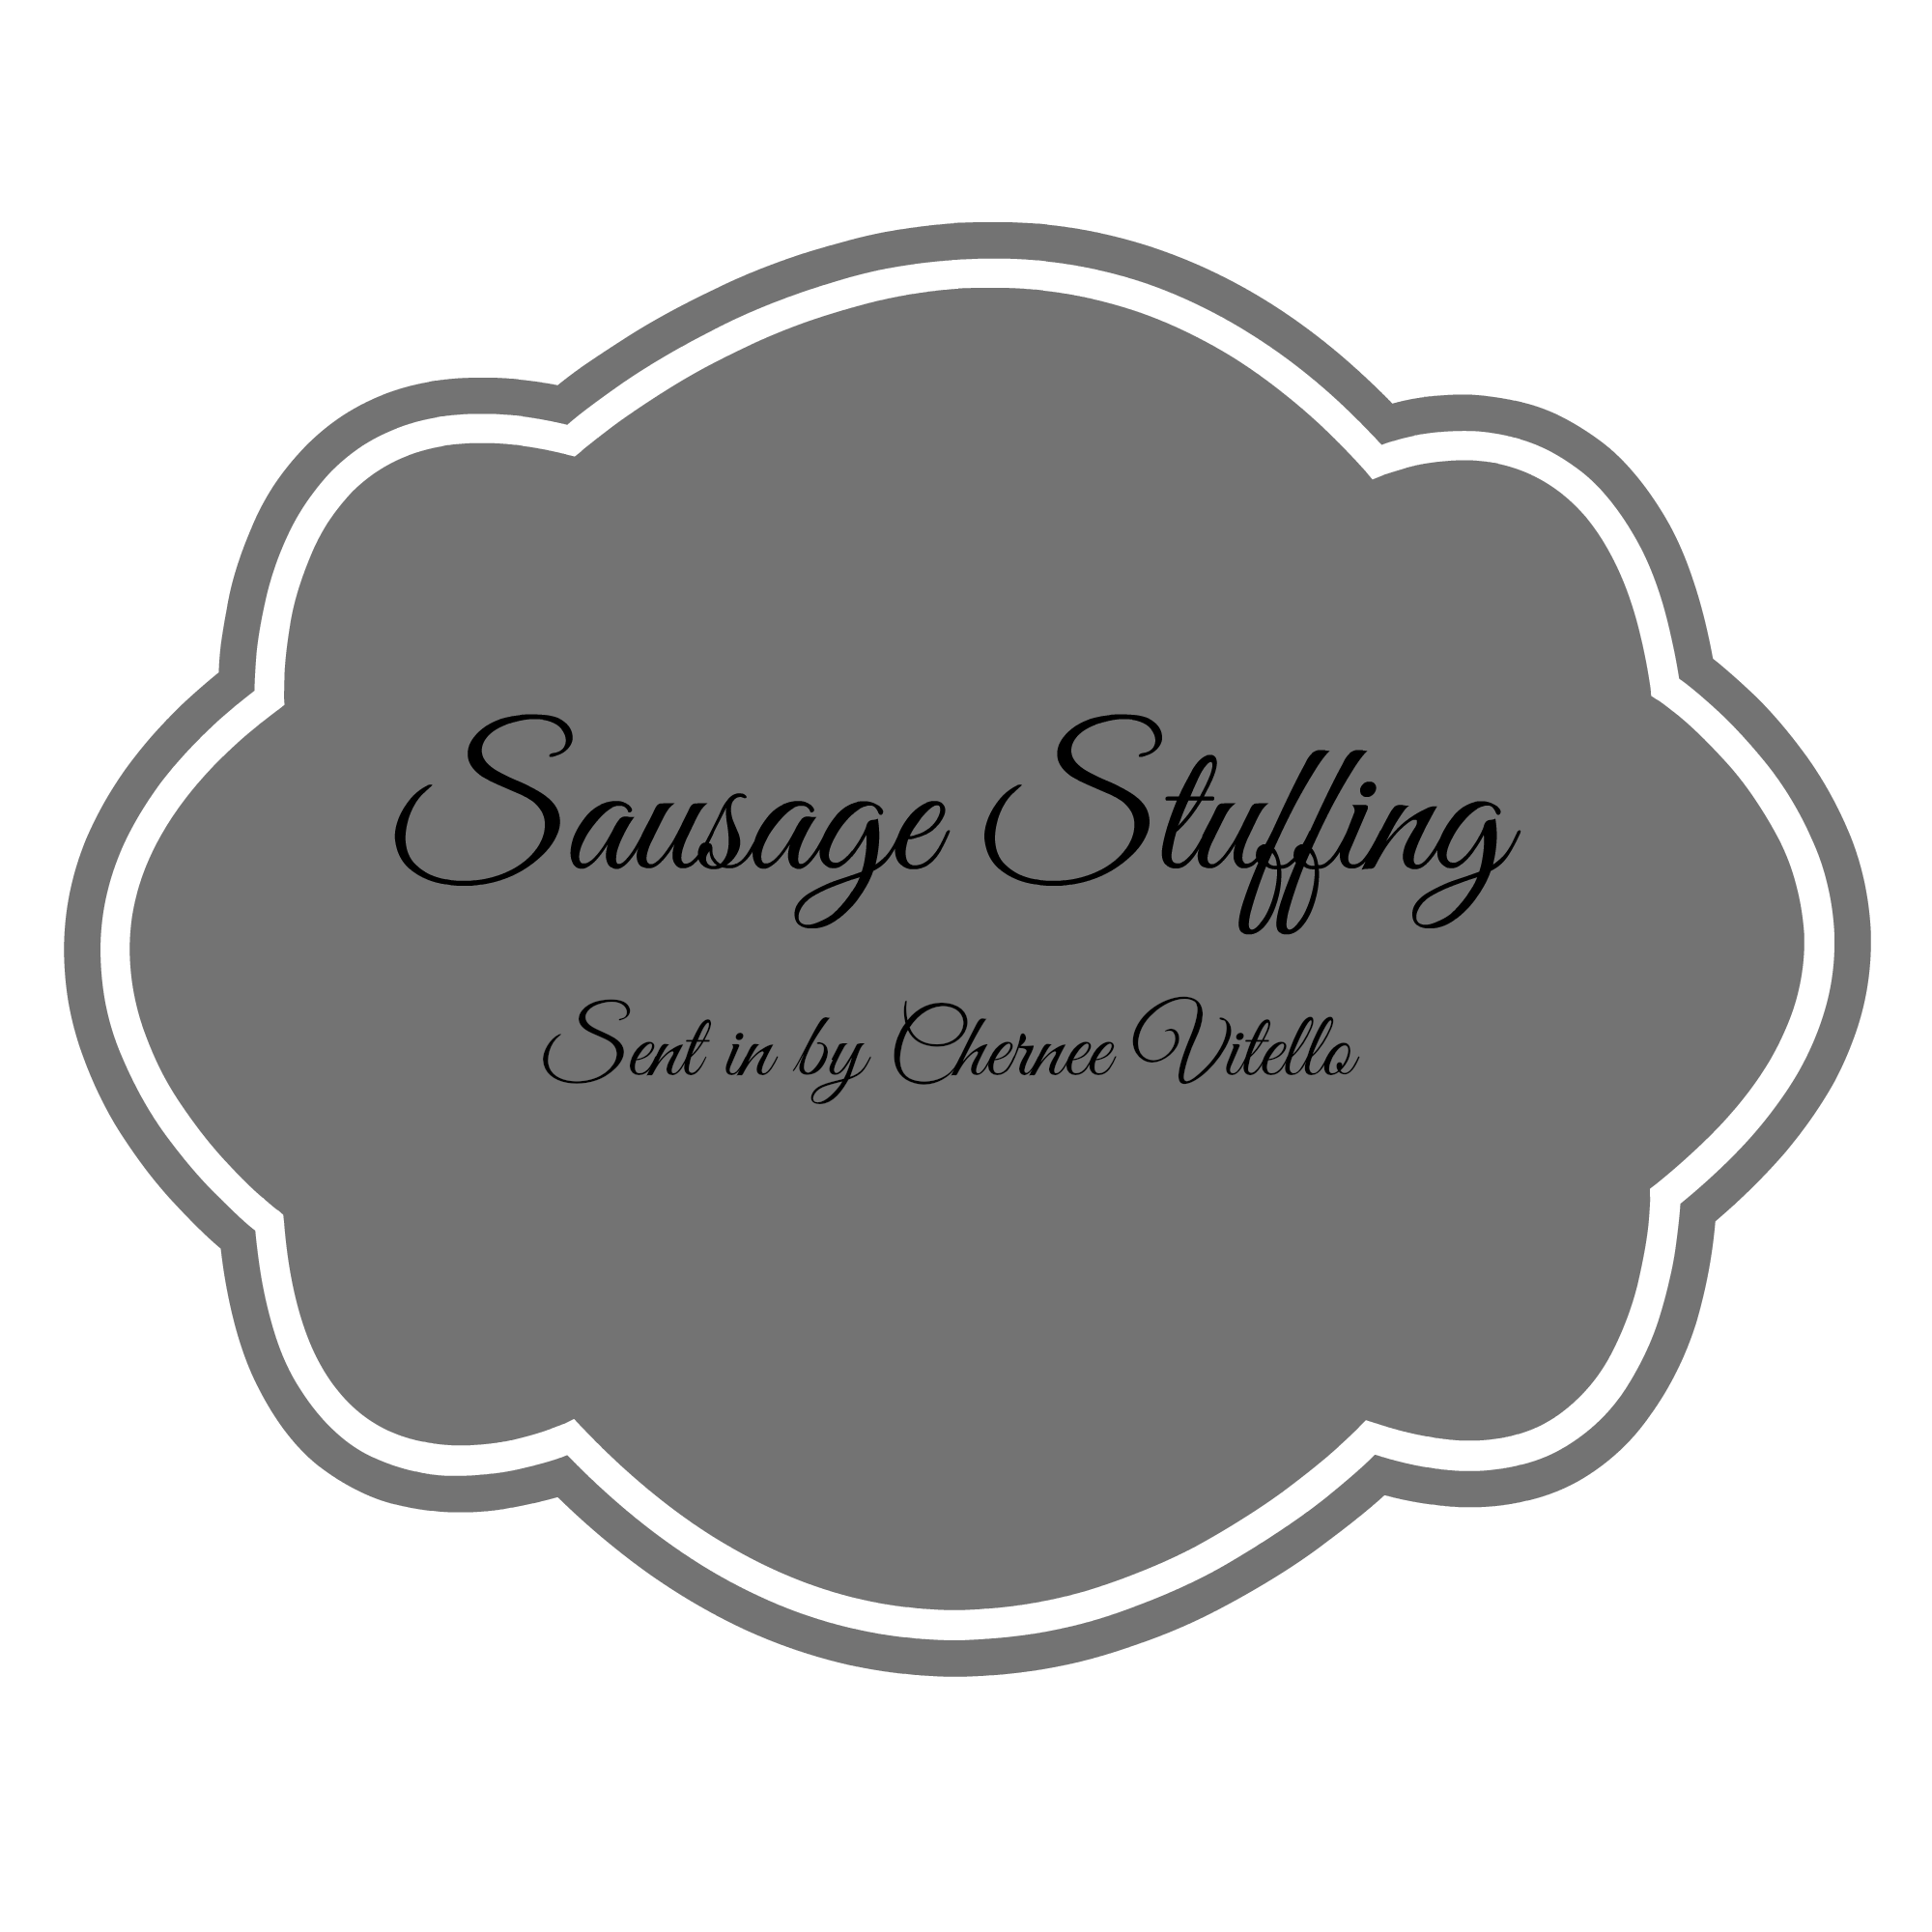 sausage stuffing